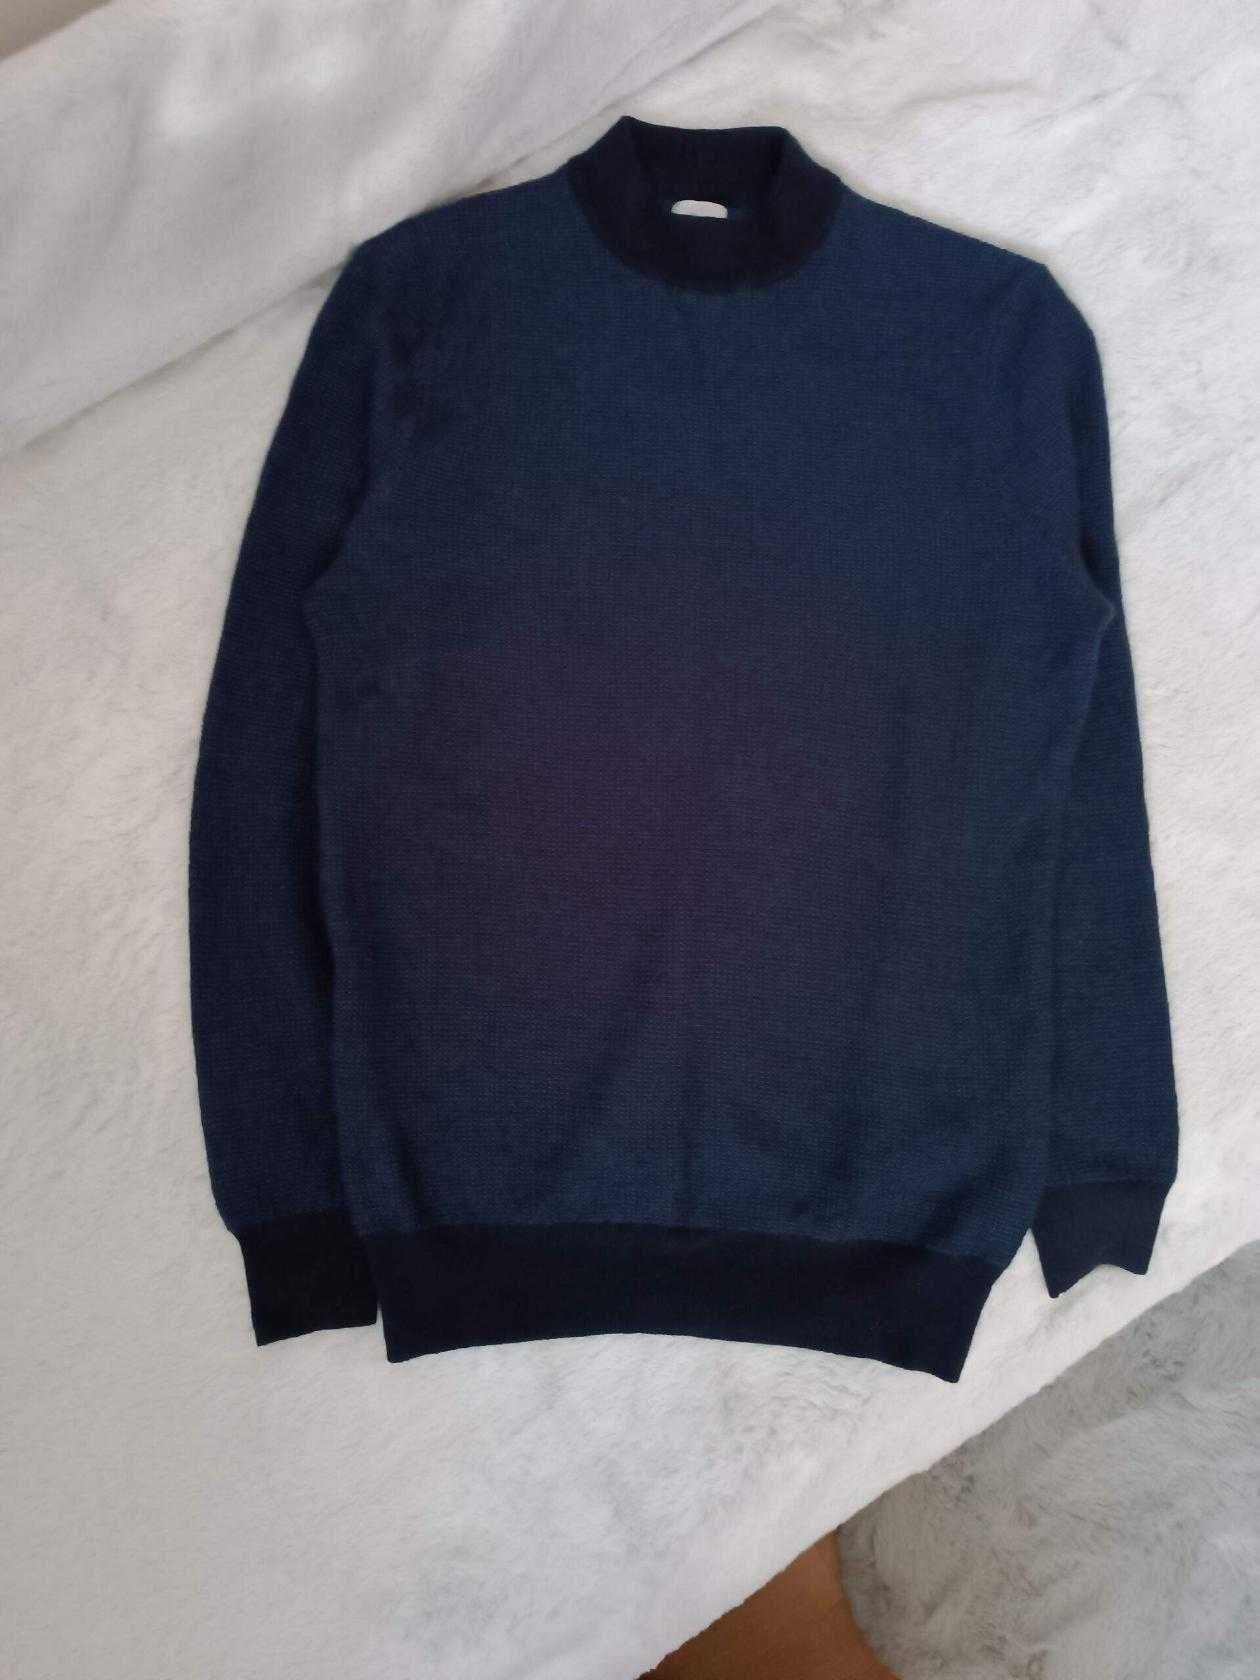 Класнючий чоловічий светр відомого бренду Zara. розмір М